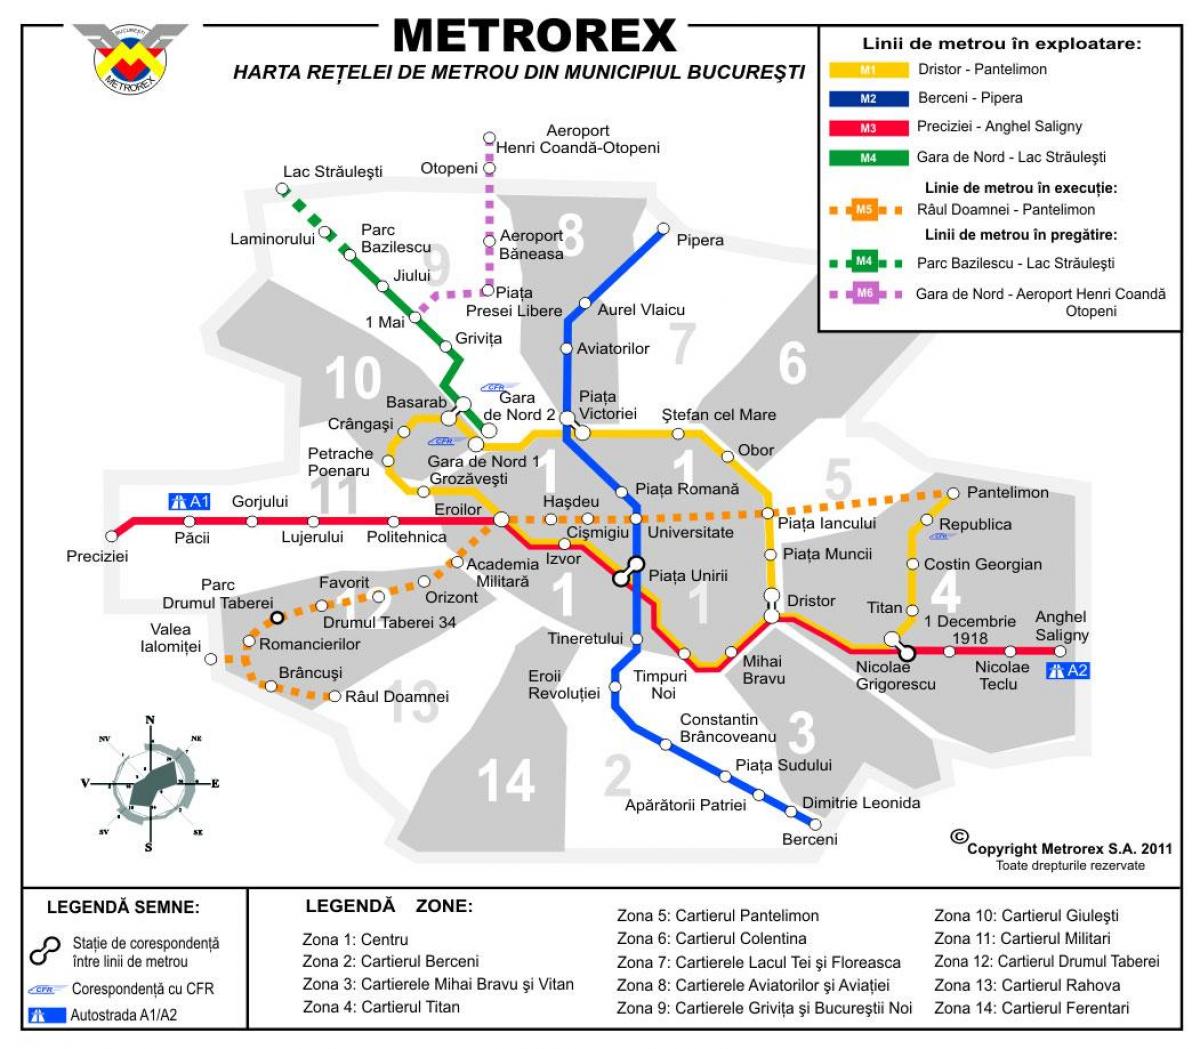 Kort af metrorex 